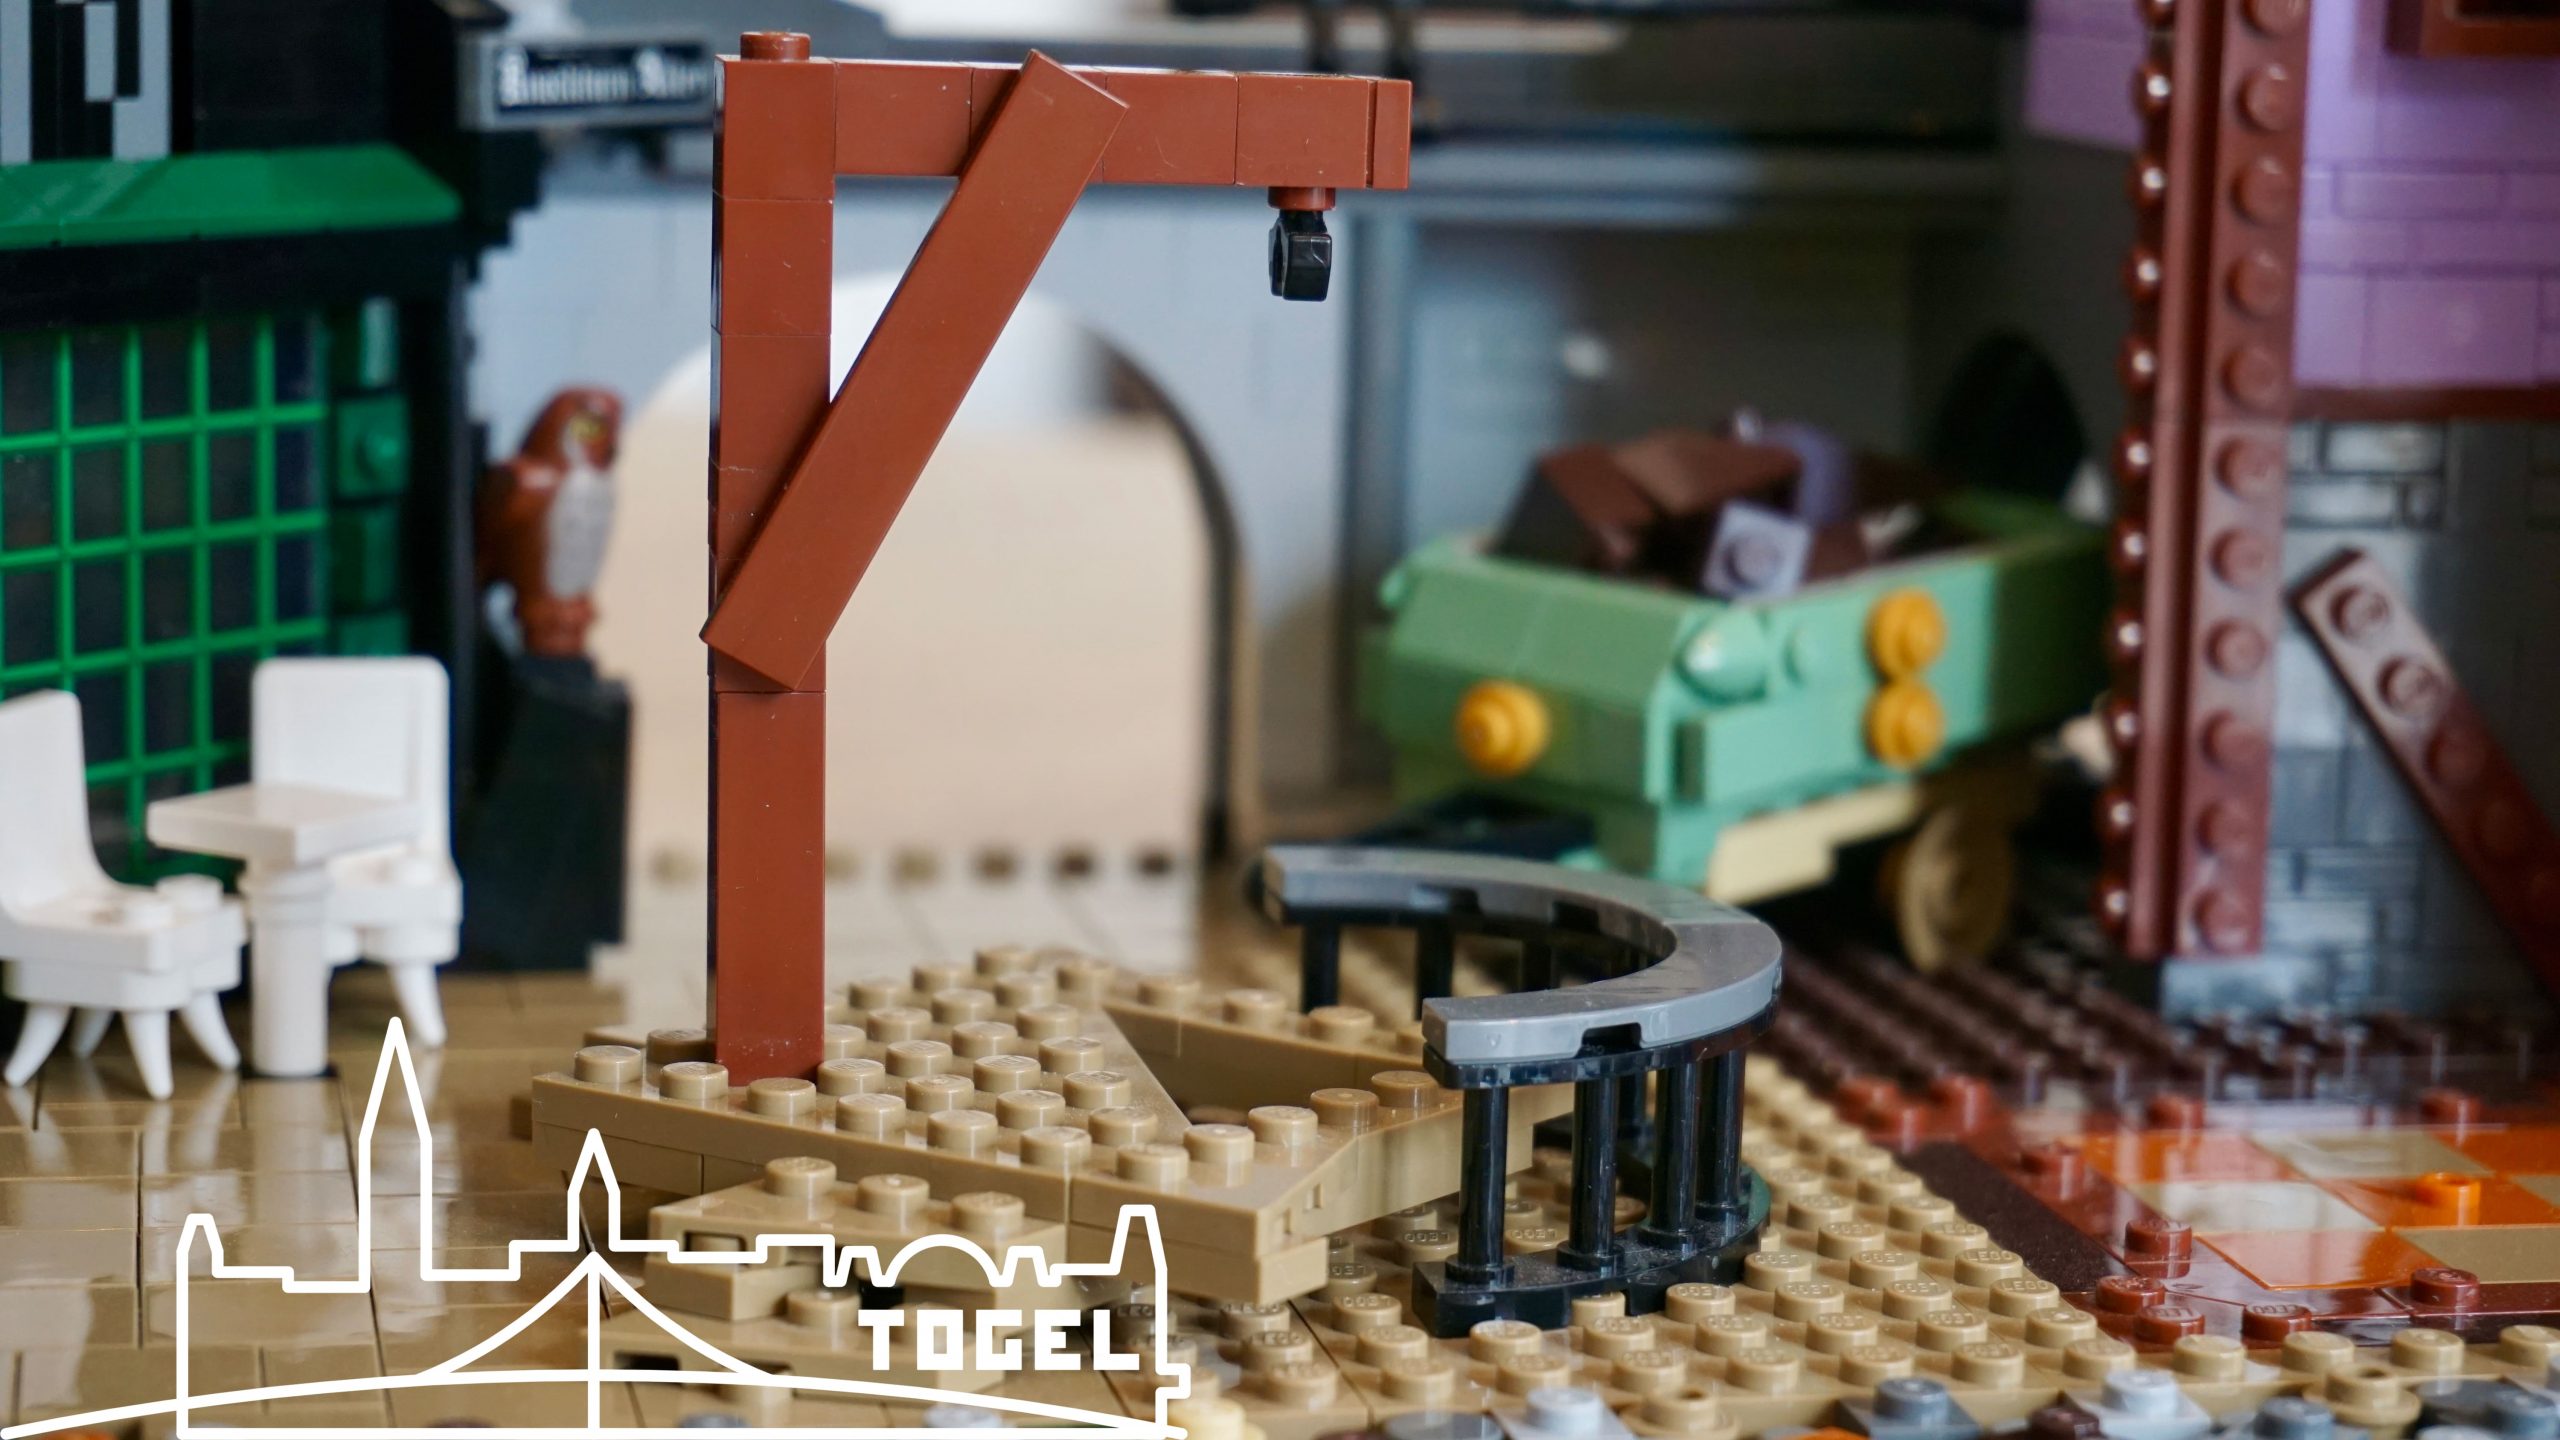 udvikling af grund Niende LEGO MOC Medieval Square by Togeltown | Rebrickable - Build with LEGO